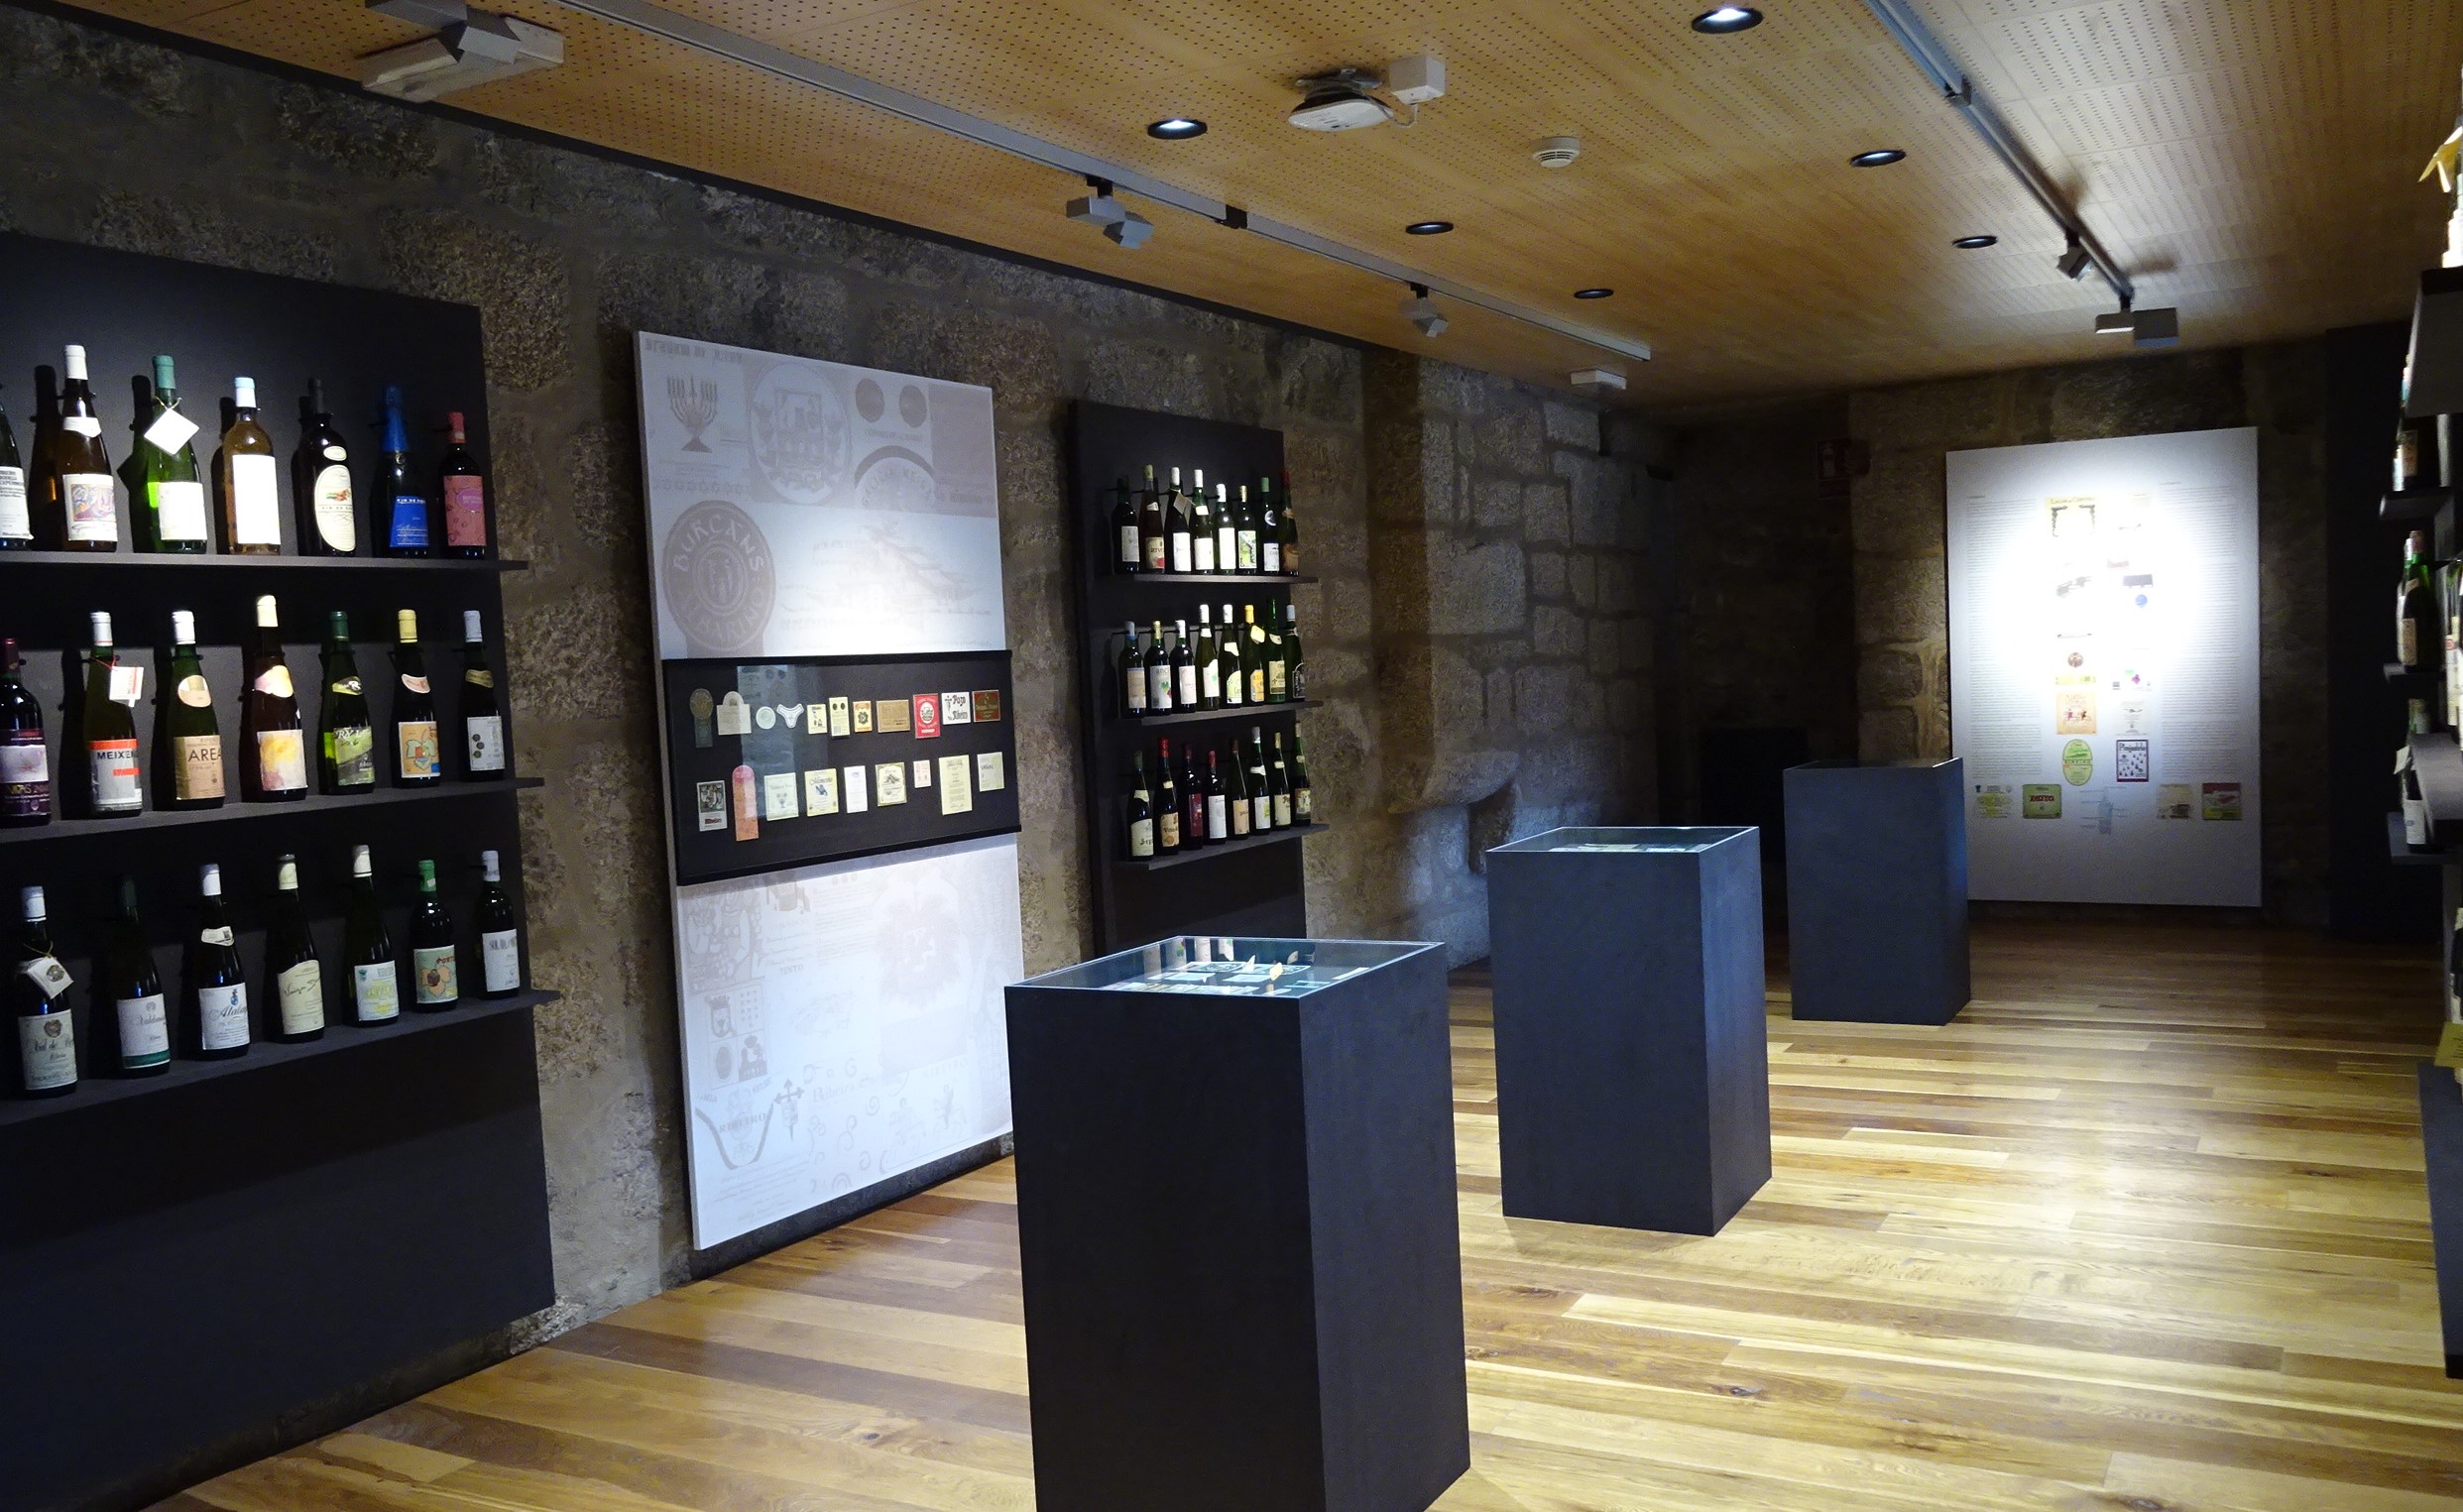 Museos y monumentos - Coleccionismo -  Exposición "Imaxes do viño de Galicia" - RIBADAVIA